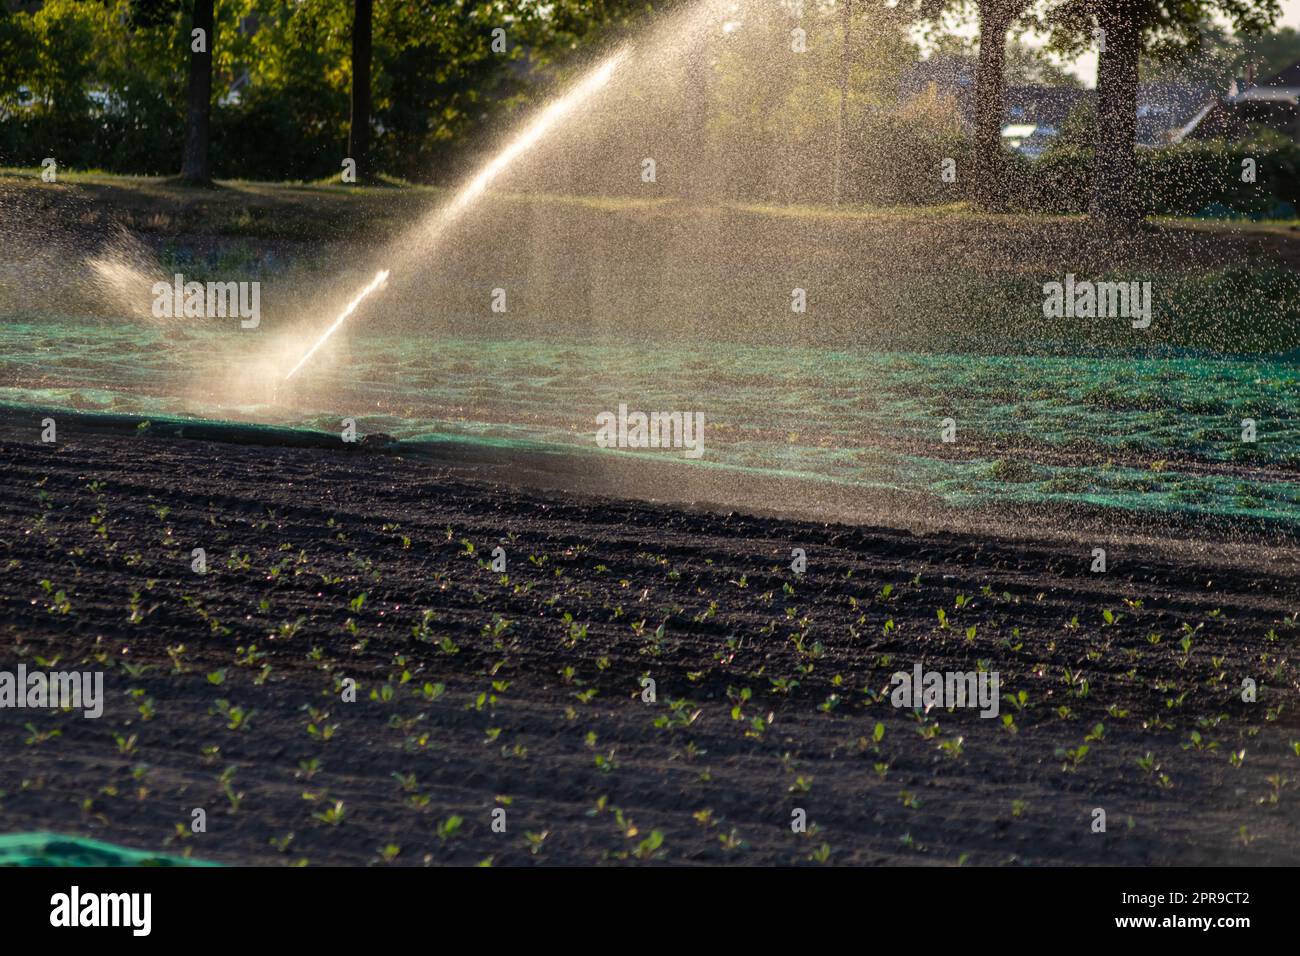 Il sistema di irrigazione agricola è necessario a causa delle calde estate e la siccità causata dai cambiamenti climatici minaccia l'agricoltura e l'agricoltura con il clima secco e l'assenza di precipitazioni gonfiano i prezzi del raccolto Foto Stock